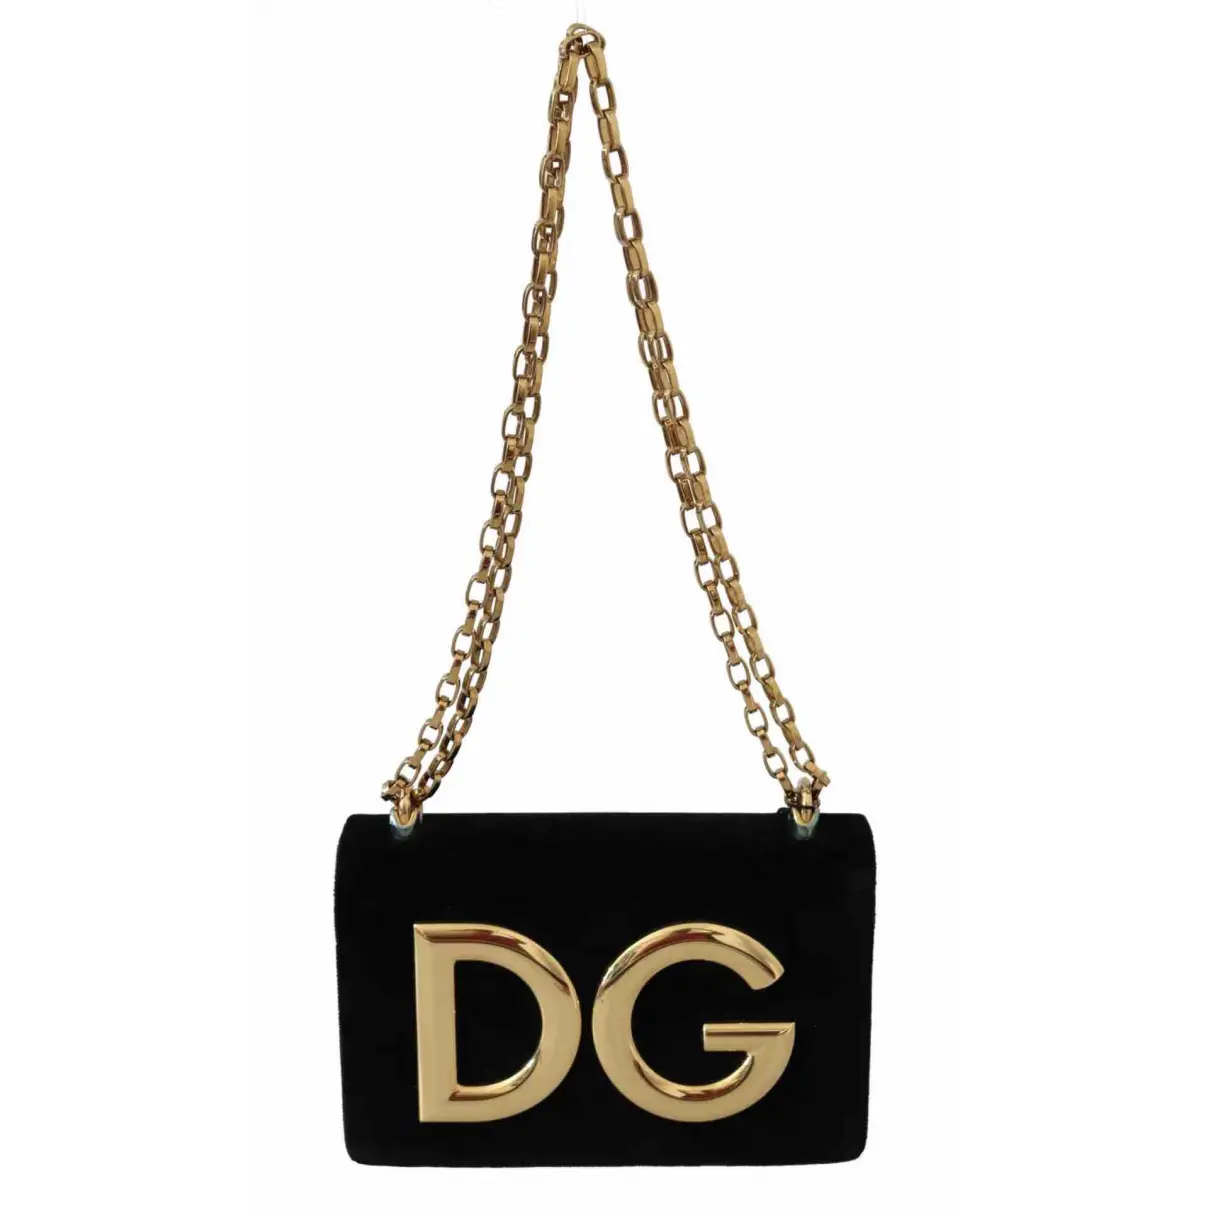 DG Girls velvet clutch bag Dolce & Gabbana